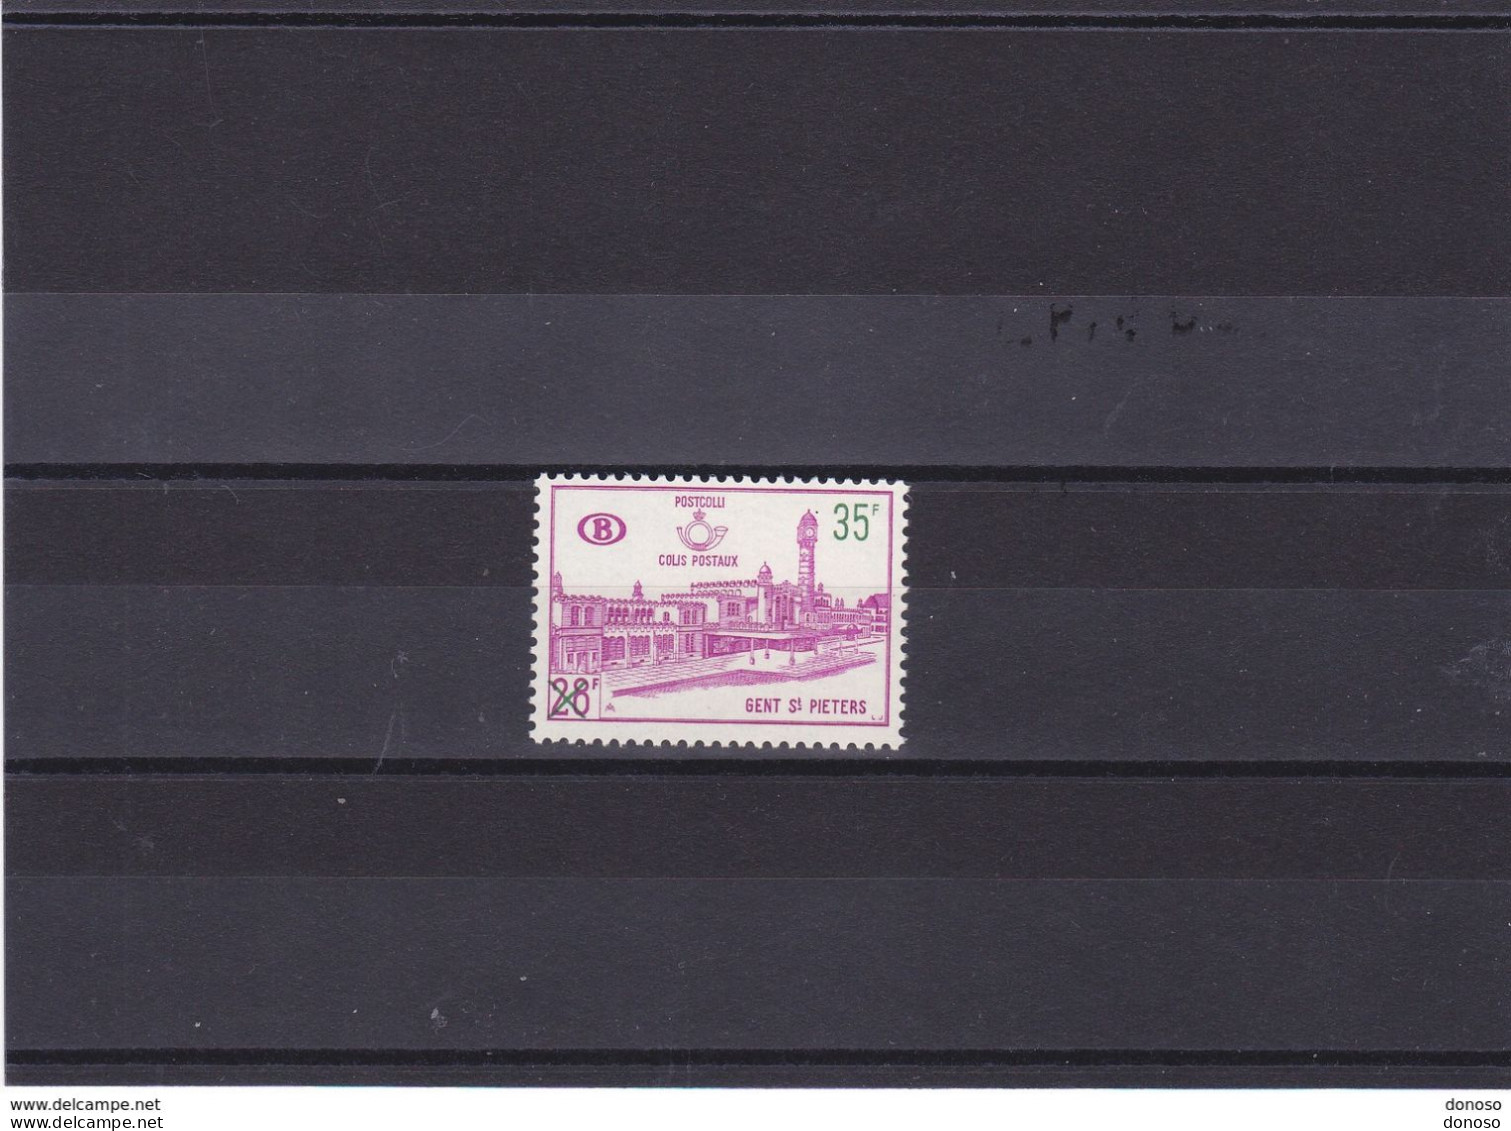 BELGIQUE 1966 GARE DE GAND Yvert 377 NEUF** MNH Cote 6 Euros - Postfris